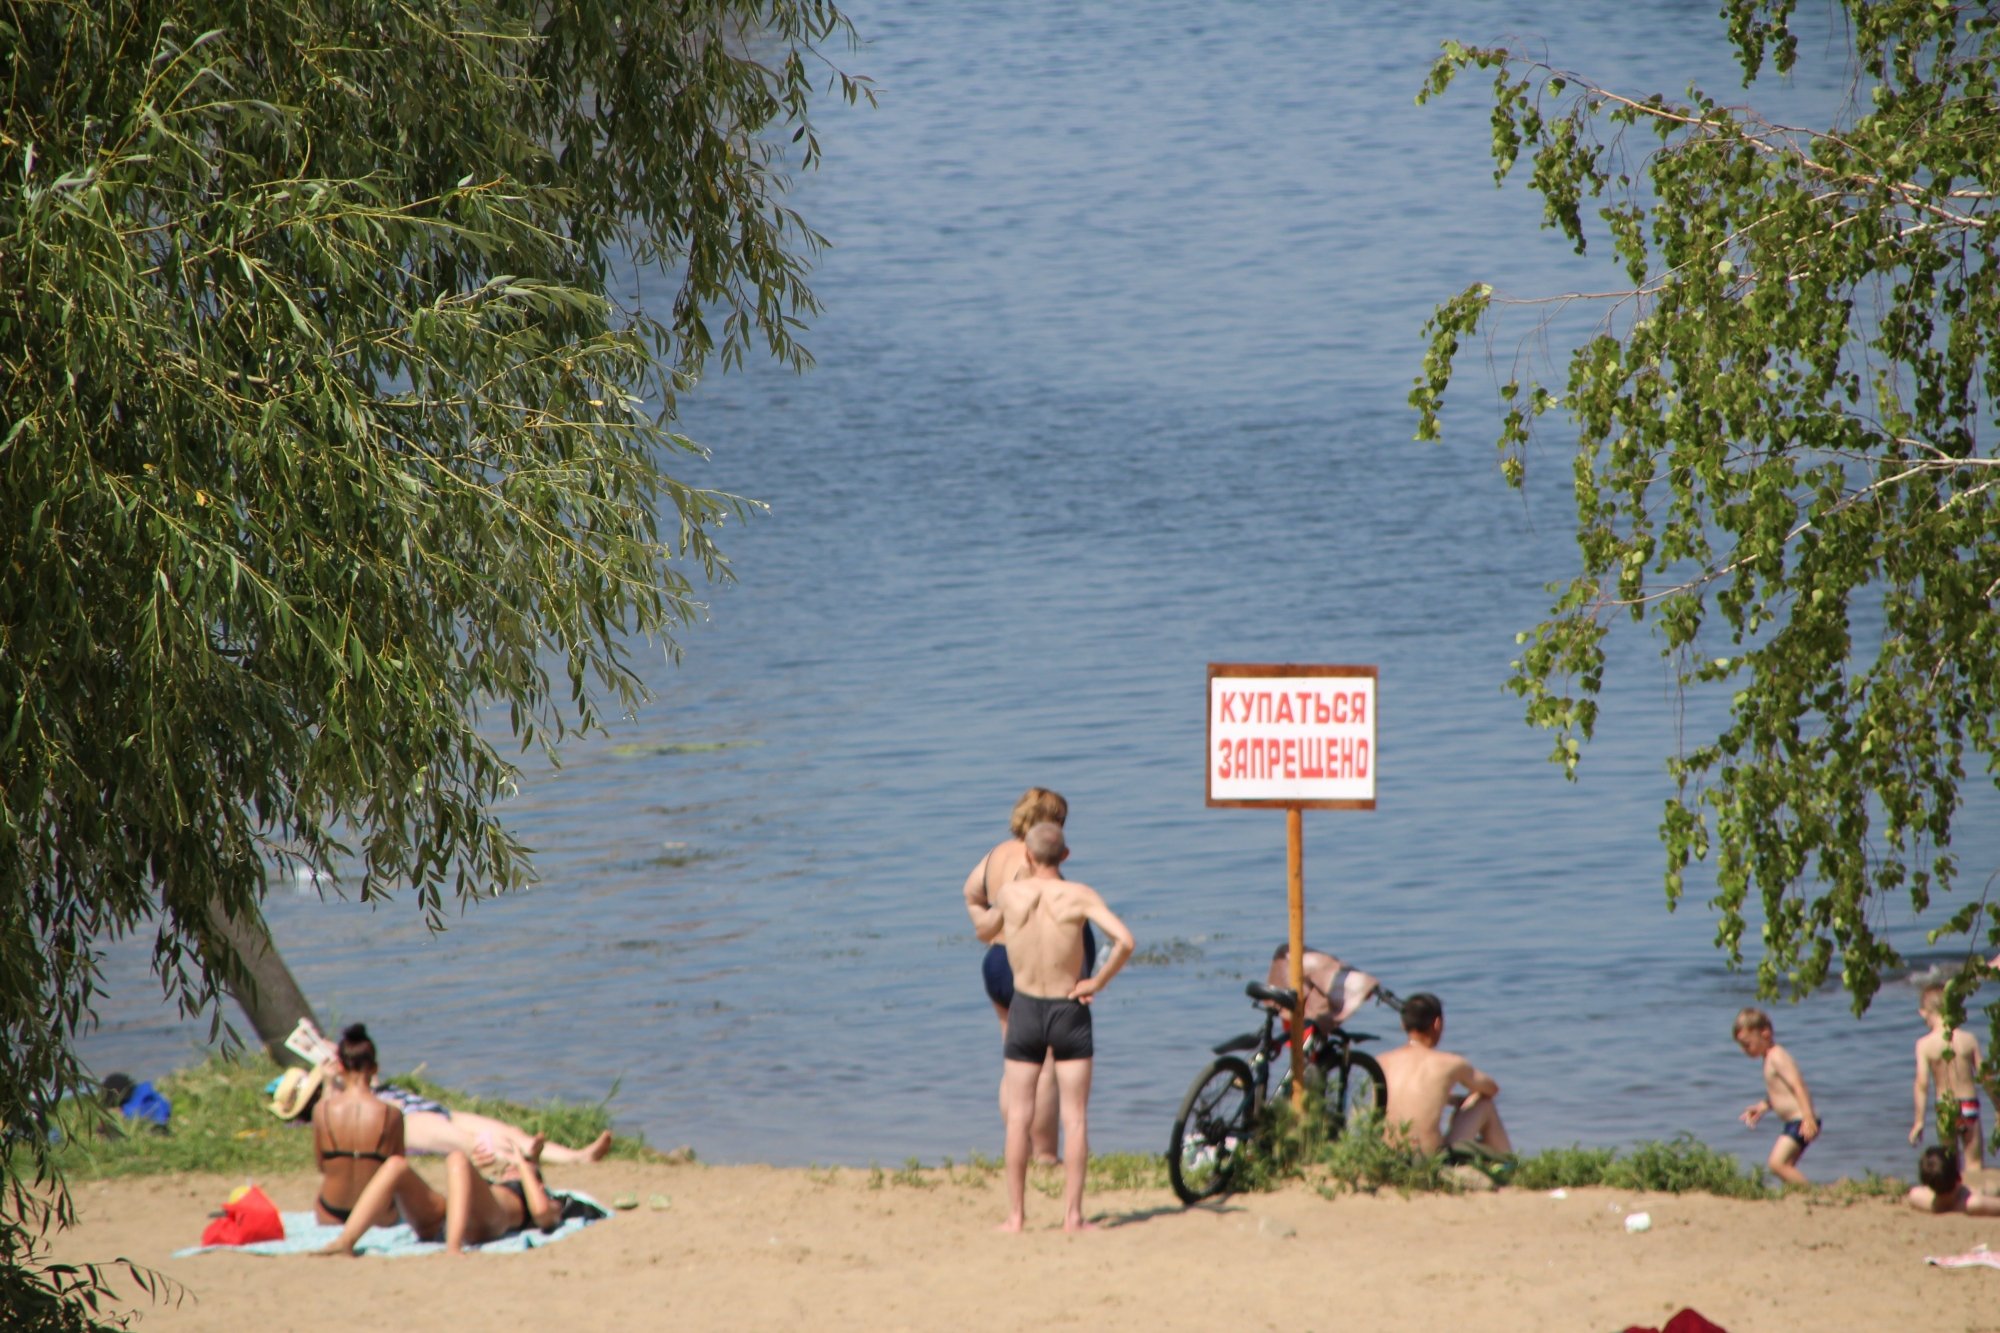 Челны нелегально открыли пляжный сезон: «Людей удержать сложно» (фото)